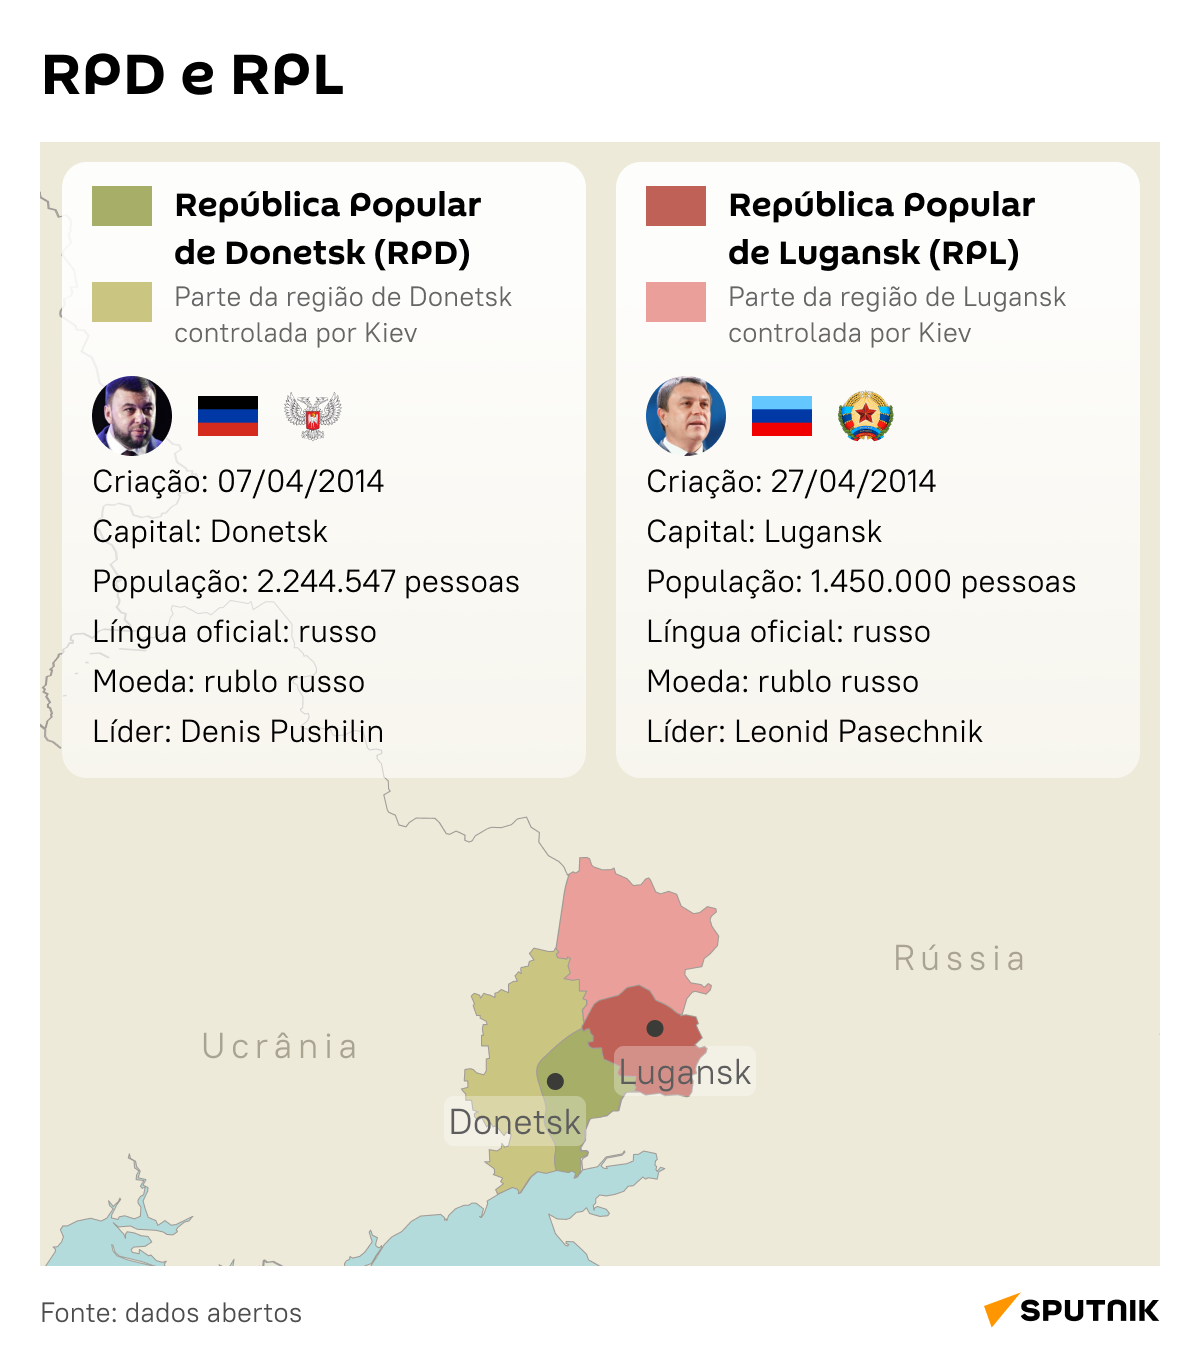 Repúblicas populares de Donetsk e Lugansk em detalhes - Sputnik Brasil